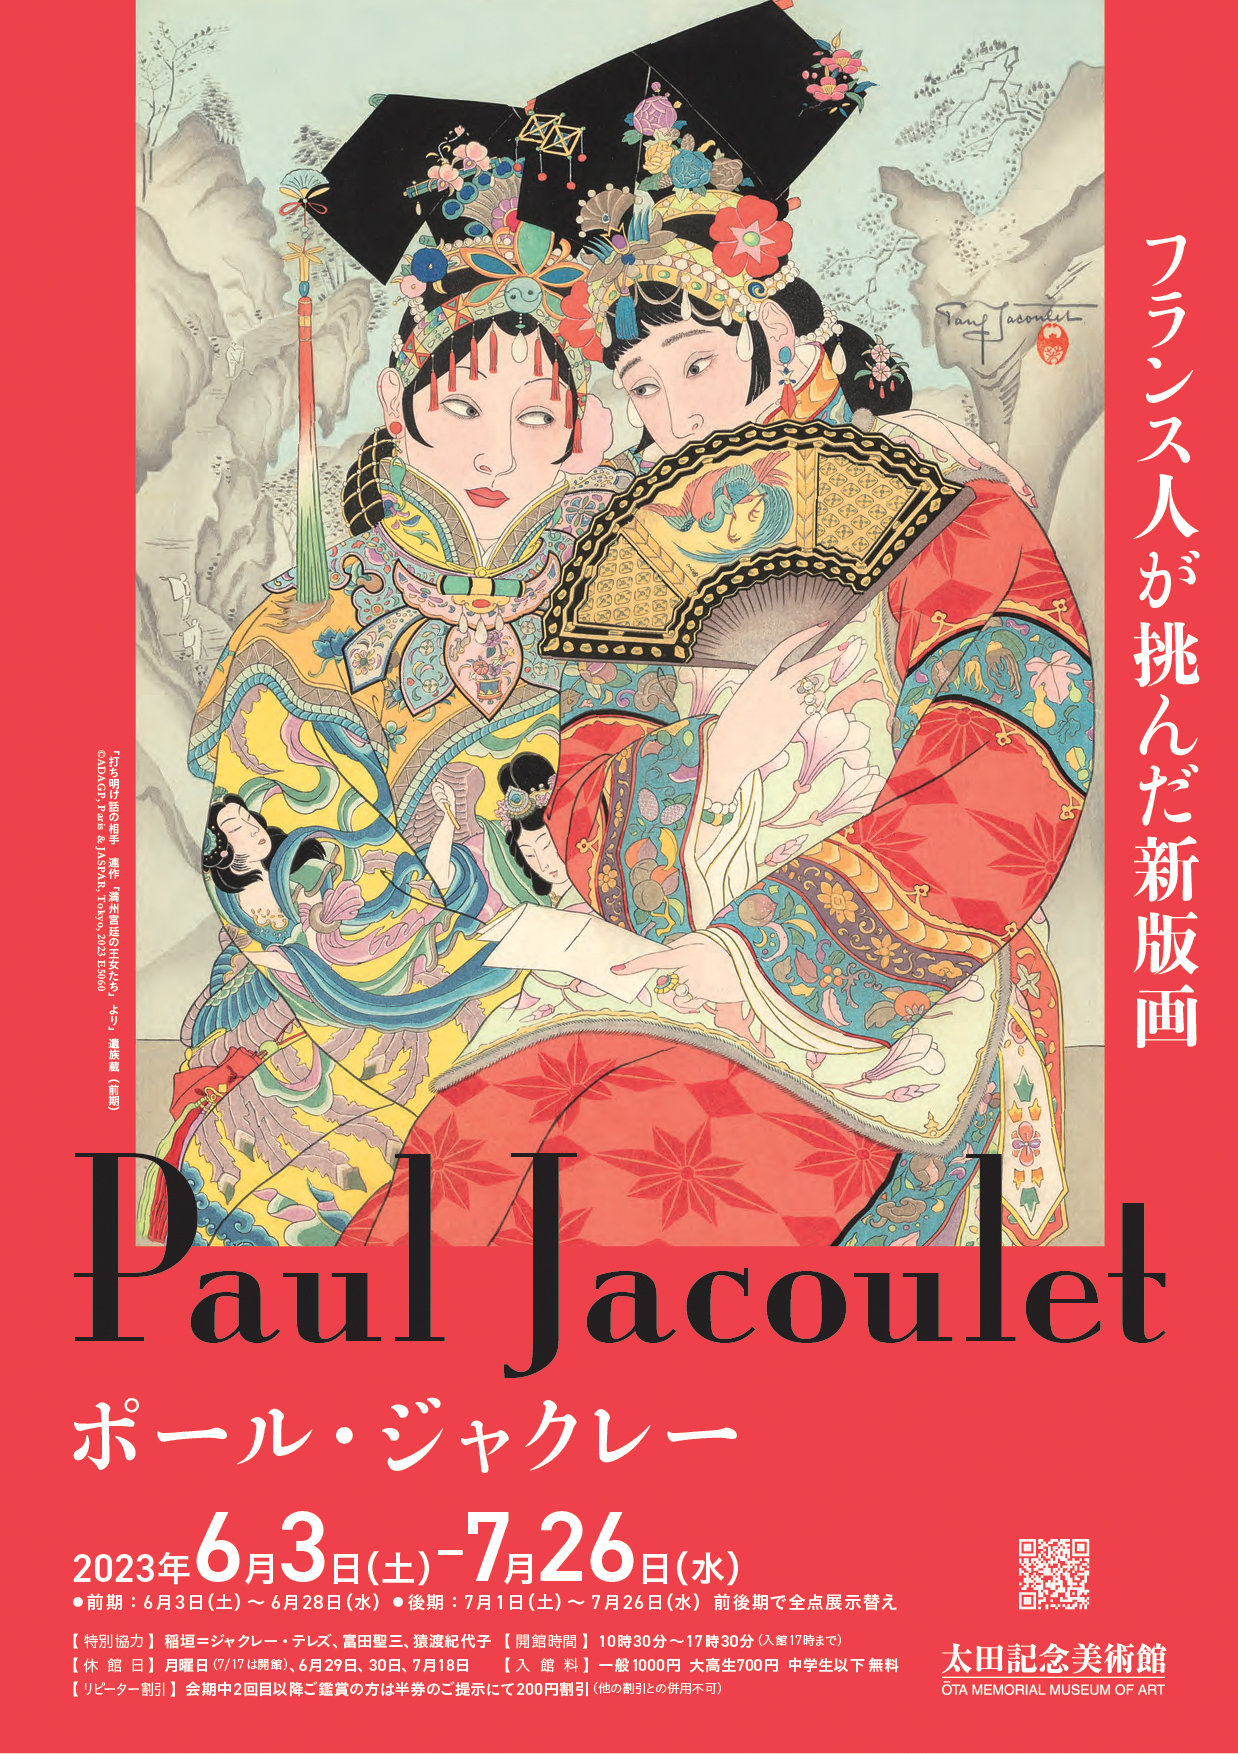 Woodblock Prints Exhibition of Paul Jacoulet （Ota Memorial Museum 